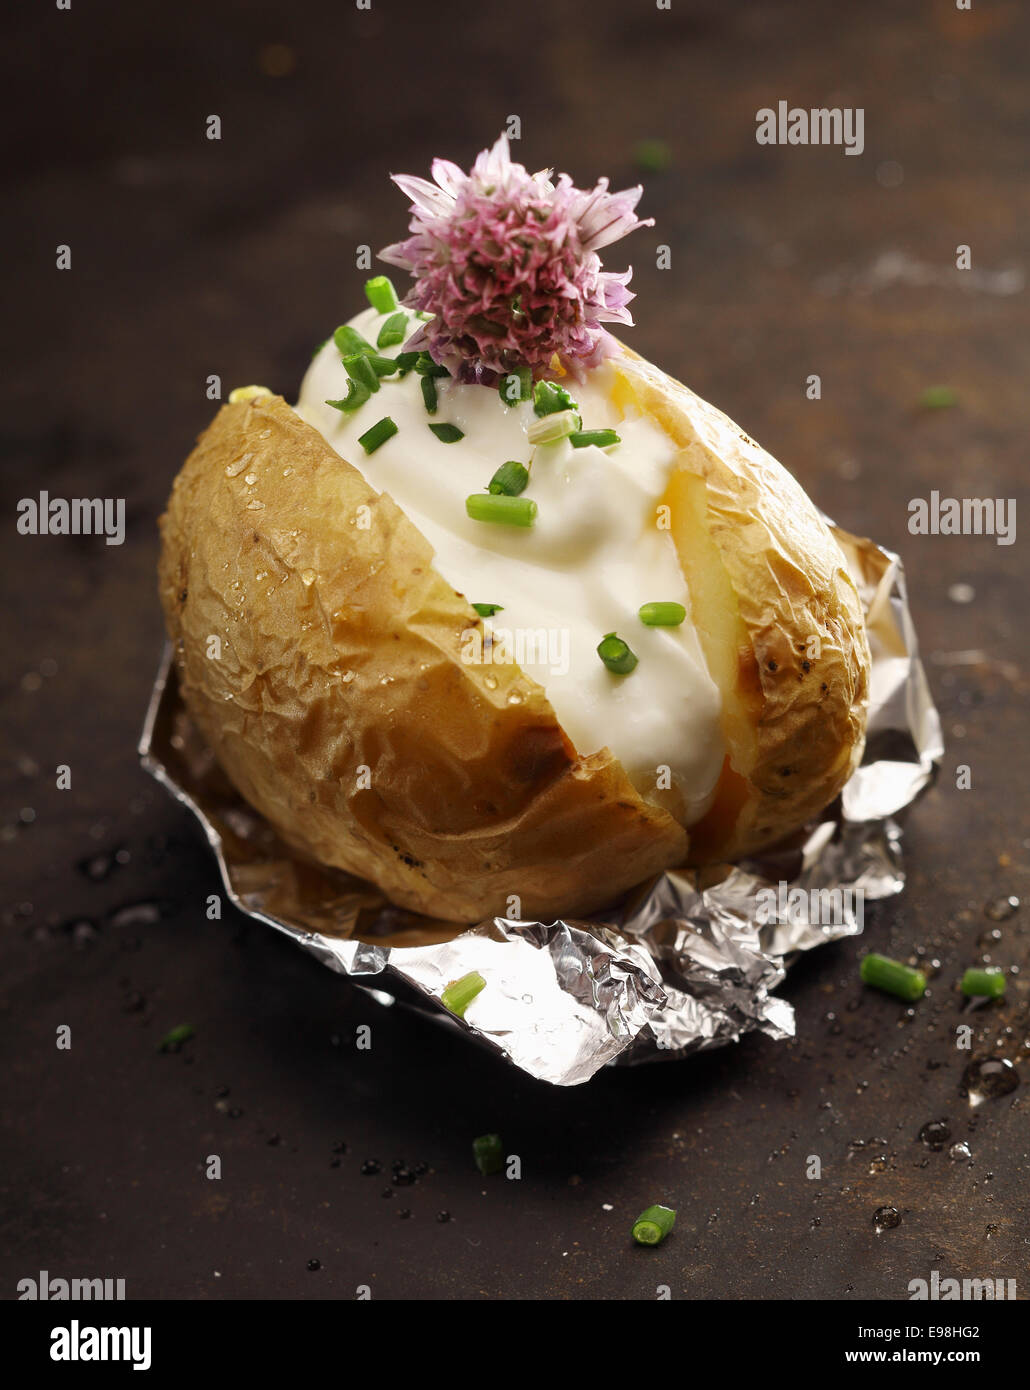 Pomme de terre au four barbecue sur aluminium son servi avec une garniture de crème sure, vert frais haché et ciboulette ciboulette une fleur sur un fond sombre Banque D'Images